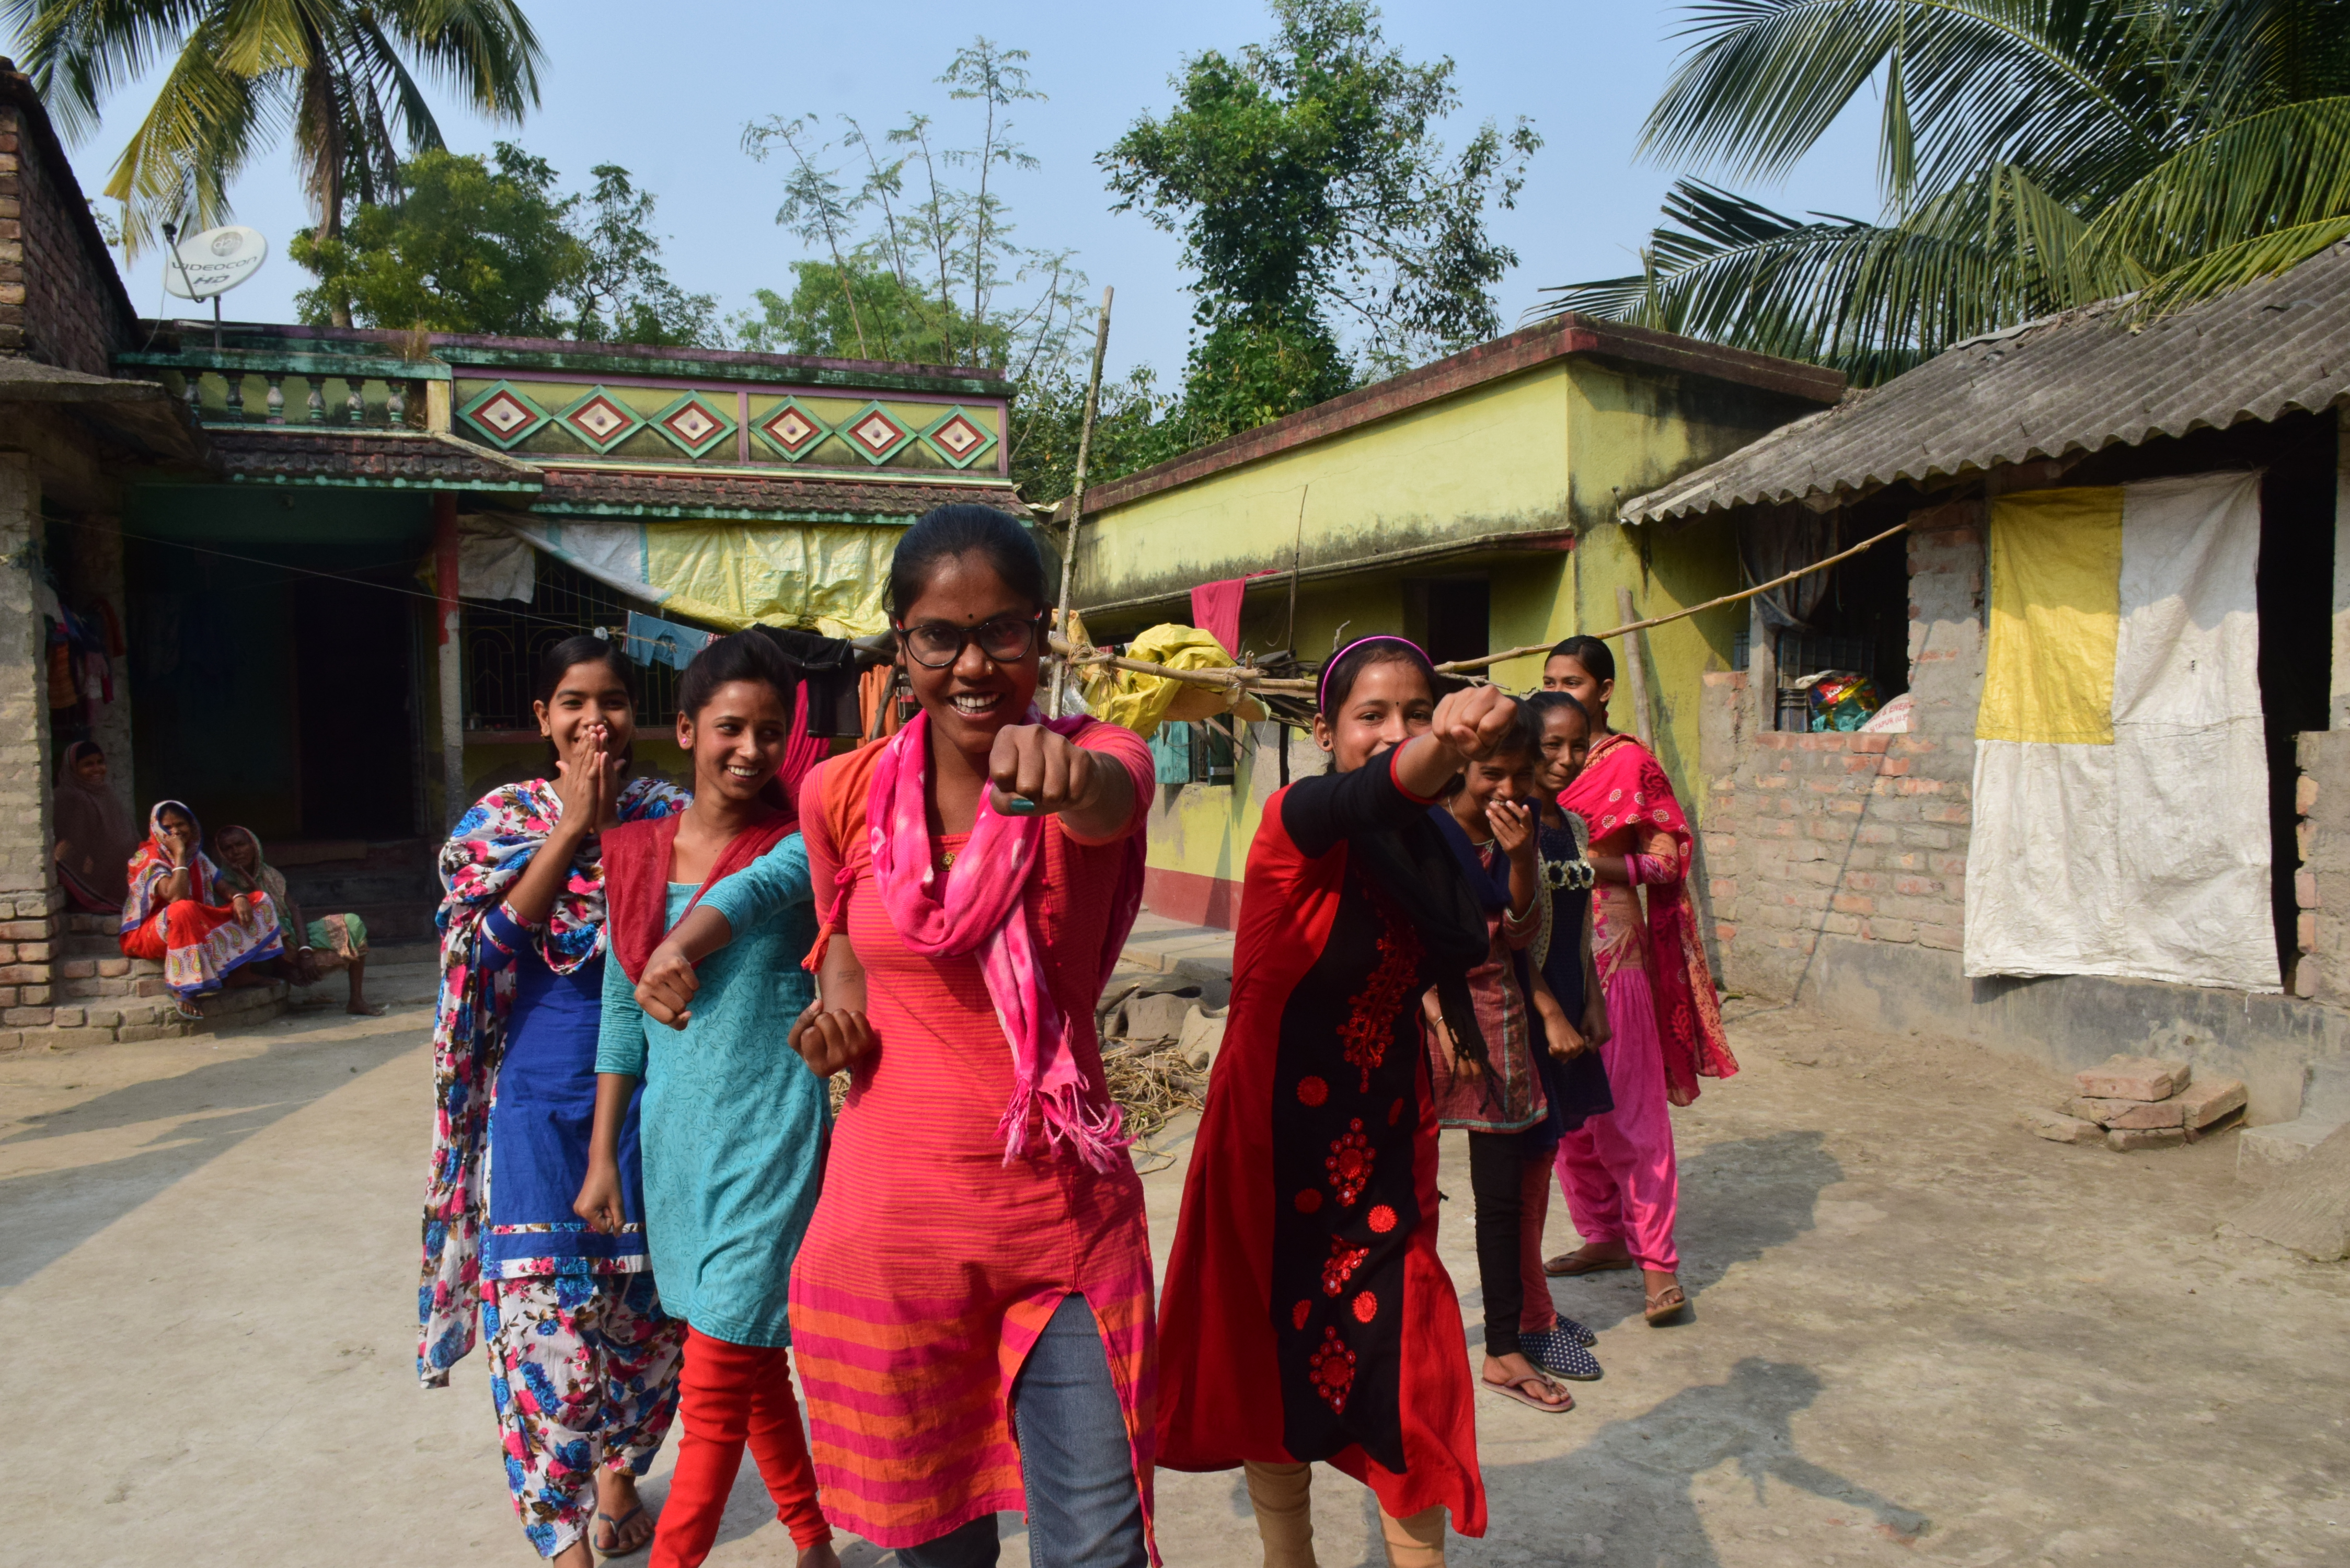 El Hena Grupo de Poder de Niñas en la India jugó un papel fundamental en la protección de los niños en su comunidad del matrimonio precoz, la trata, el trabajo infantil y la deserción escolar